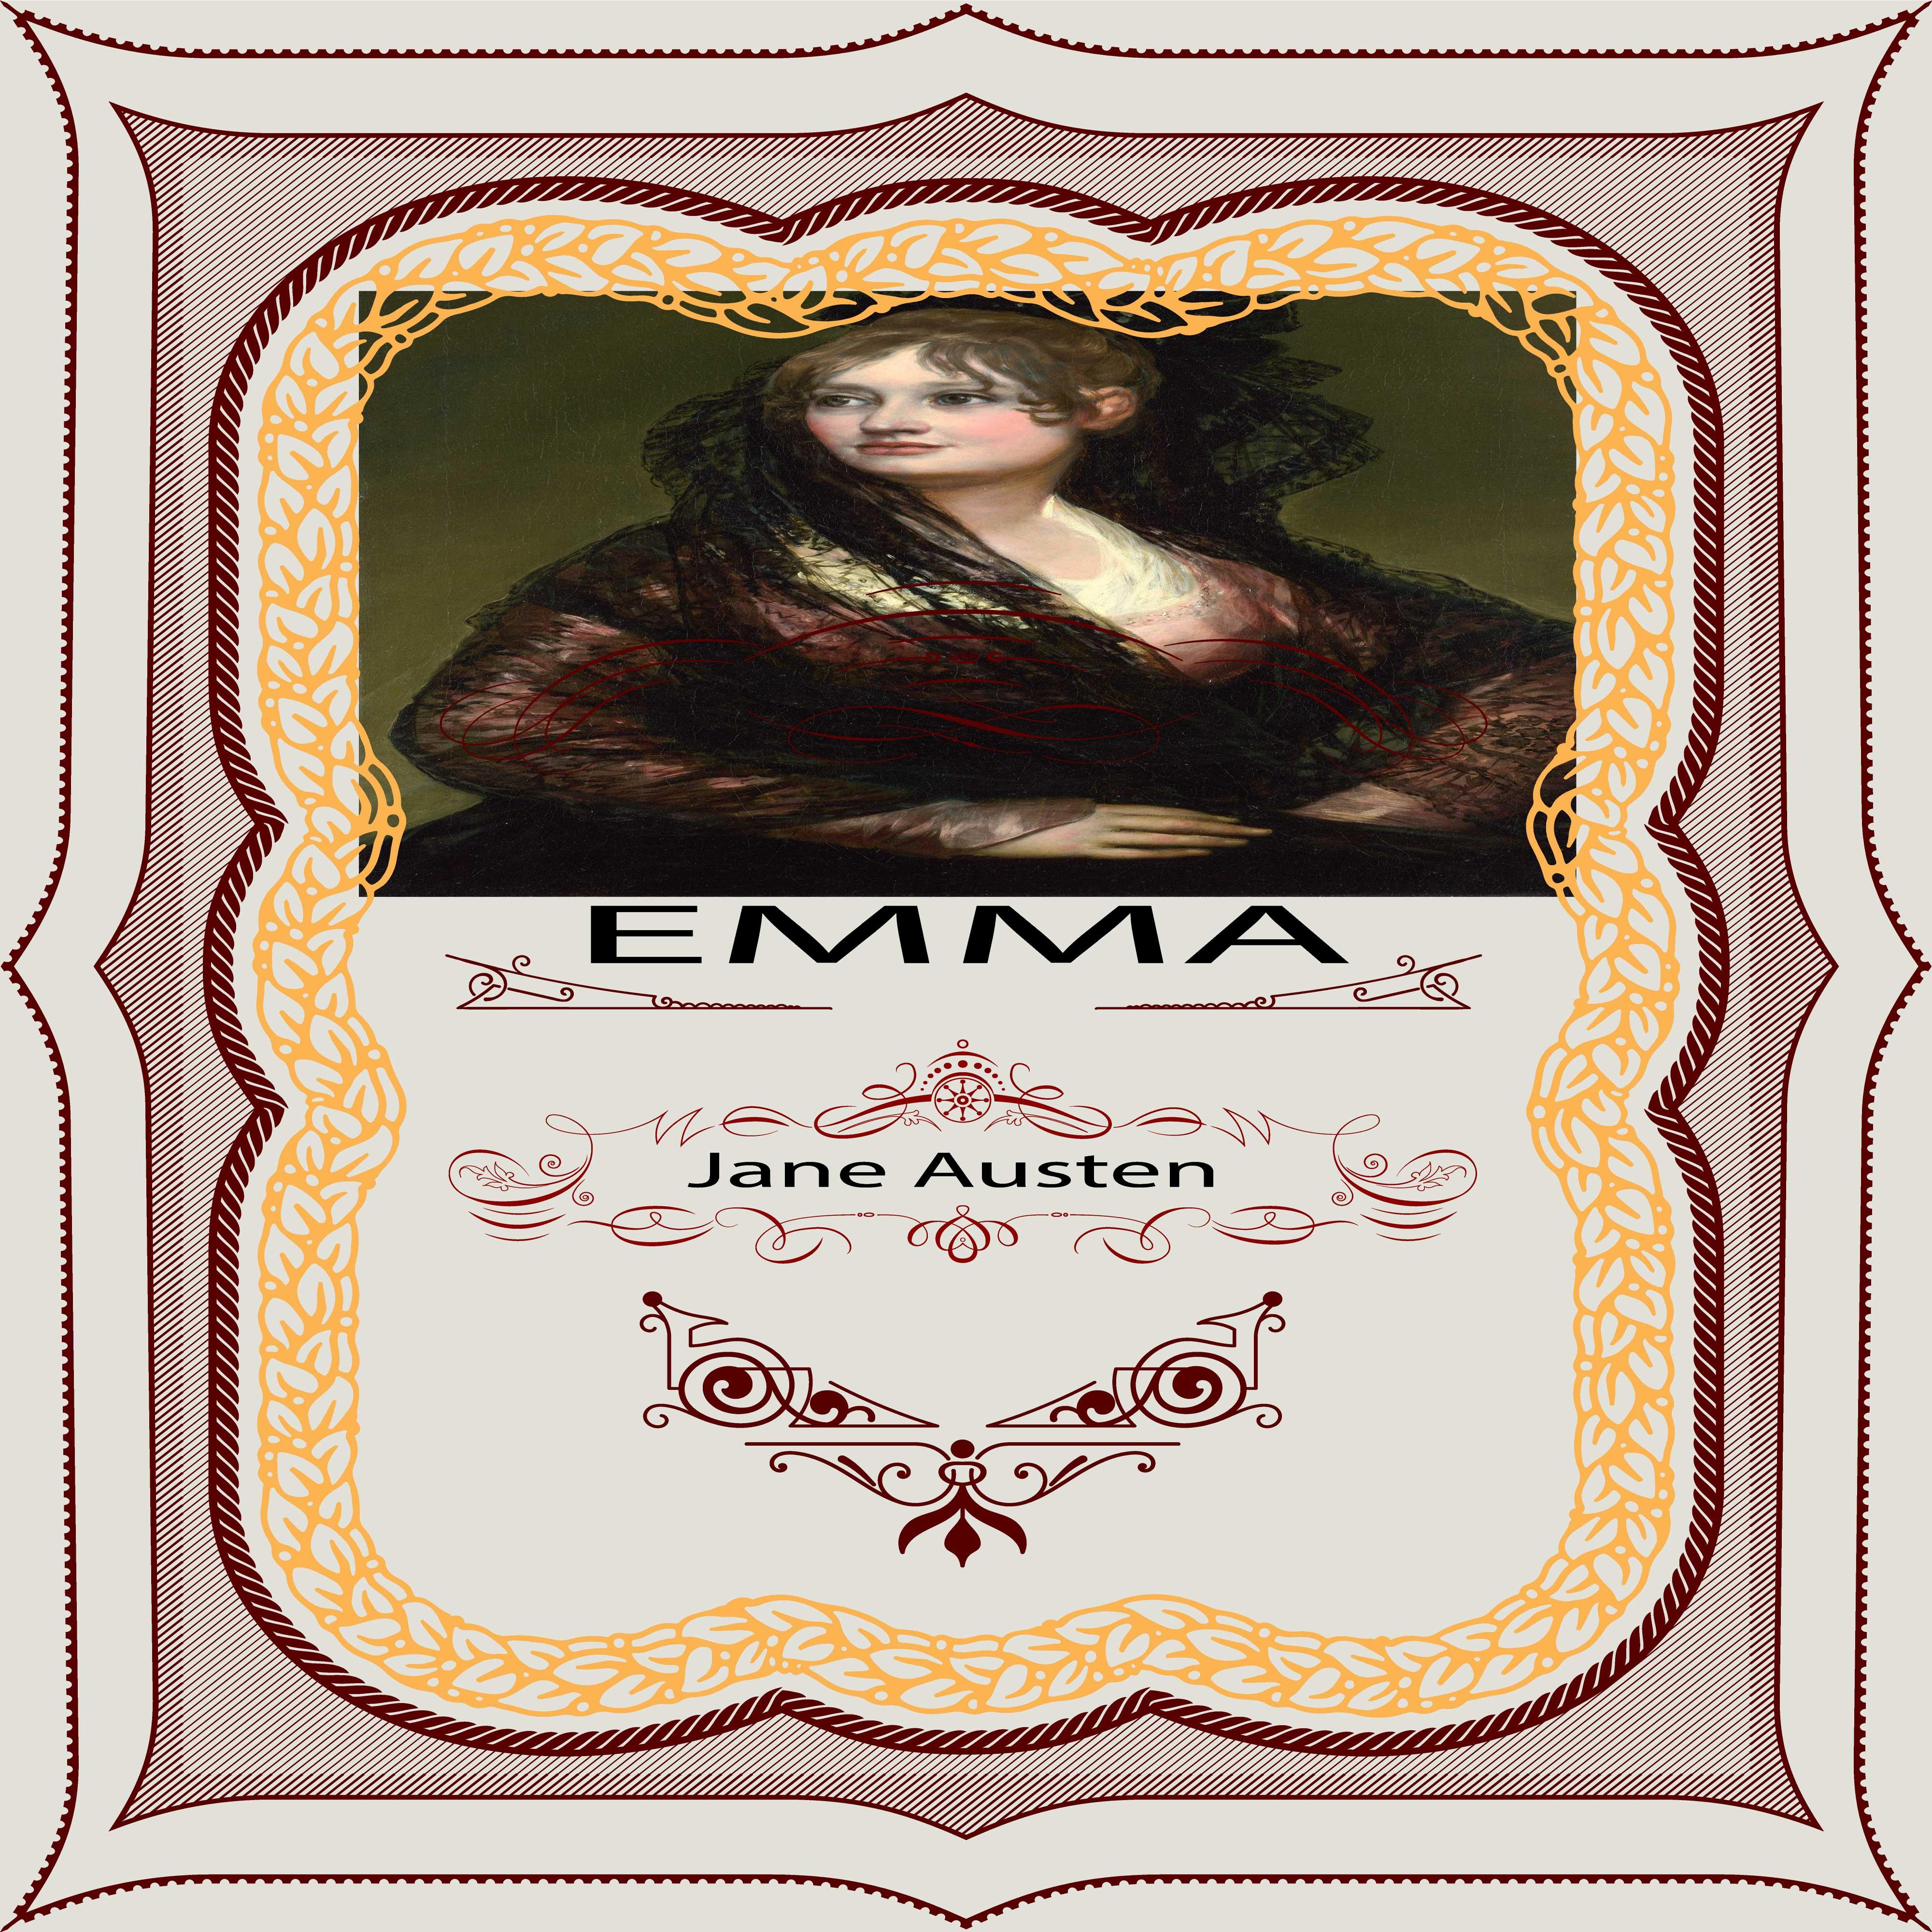 Jane Austen: Emma, Pt. 3, Chapter 14